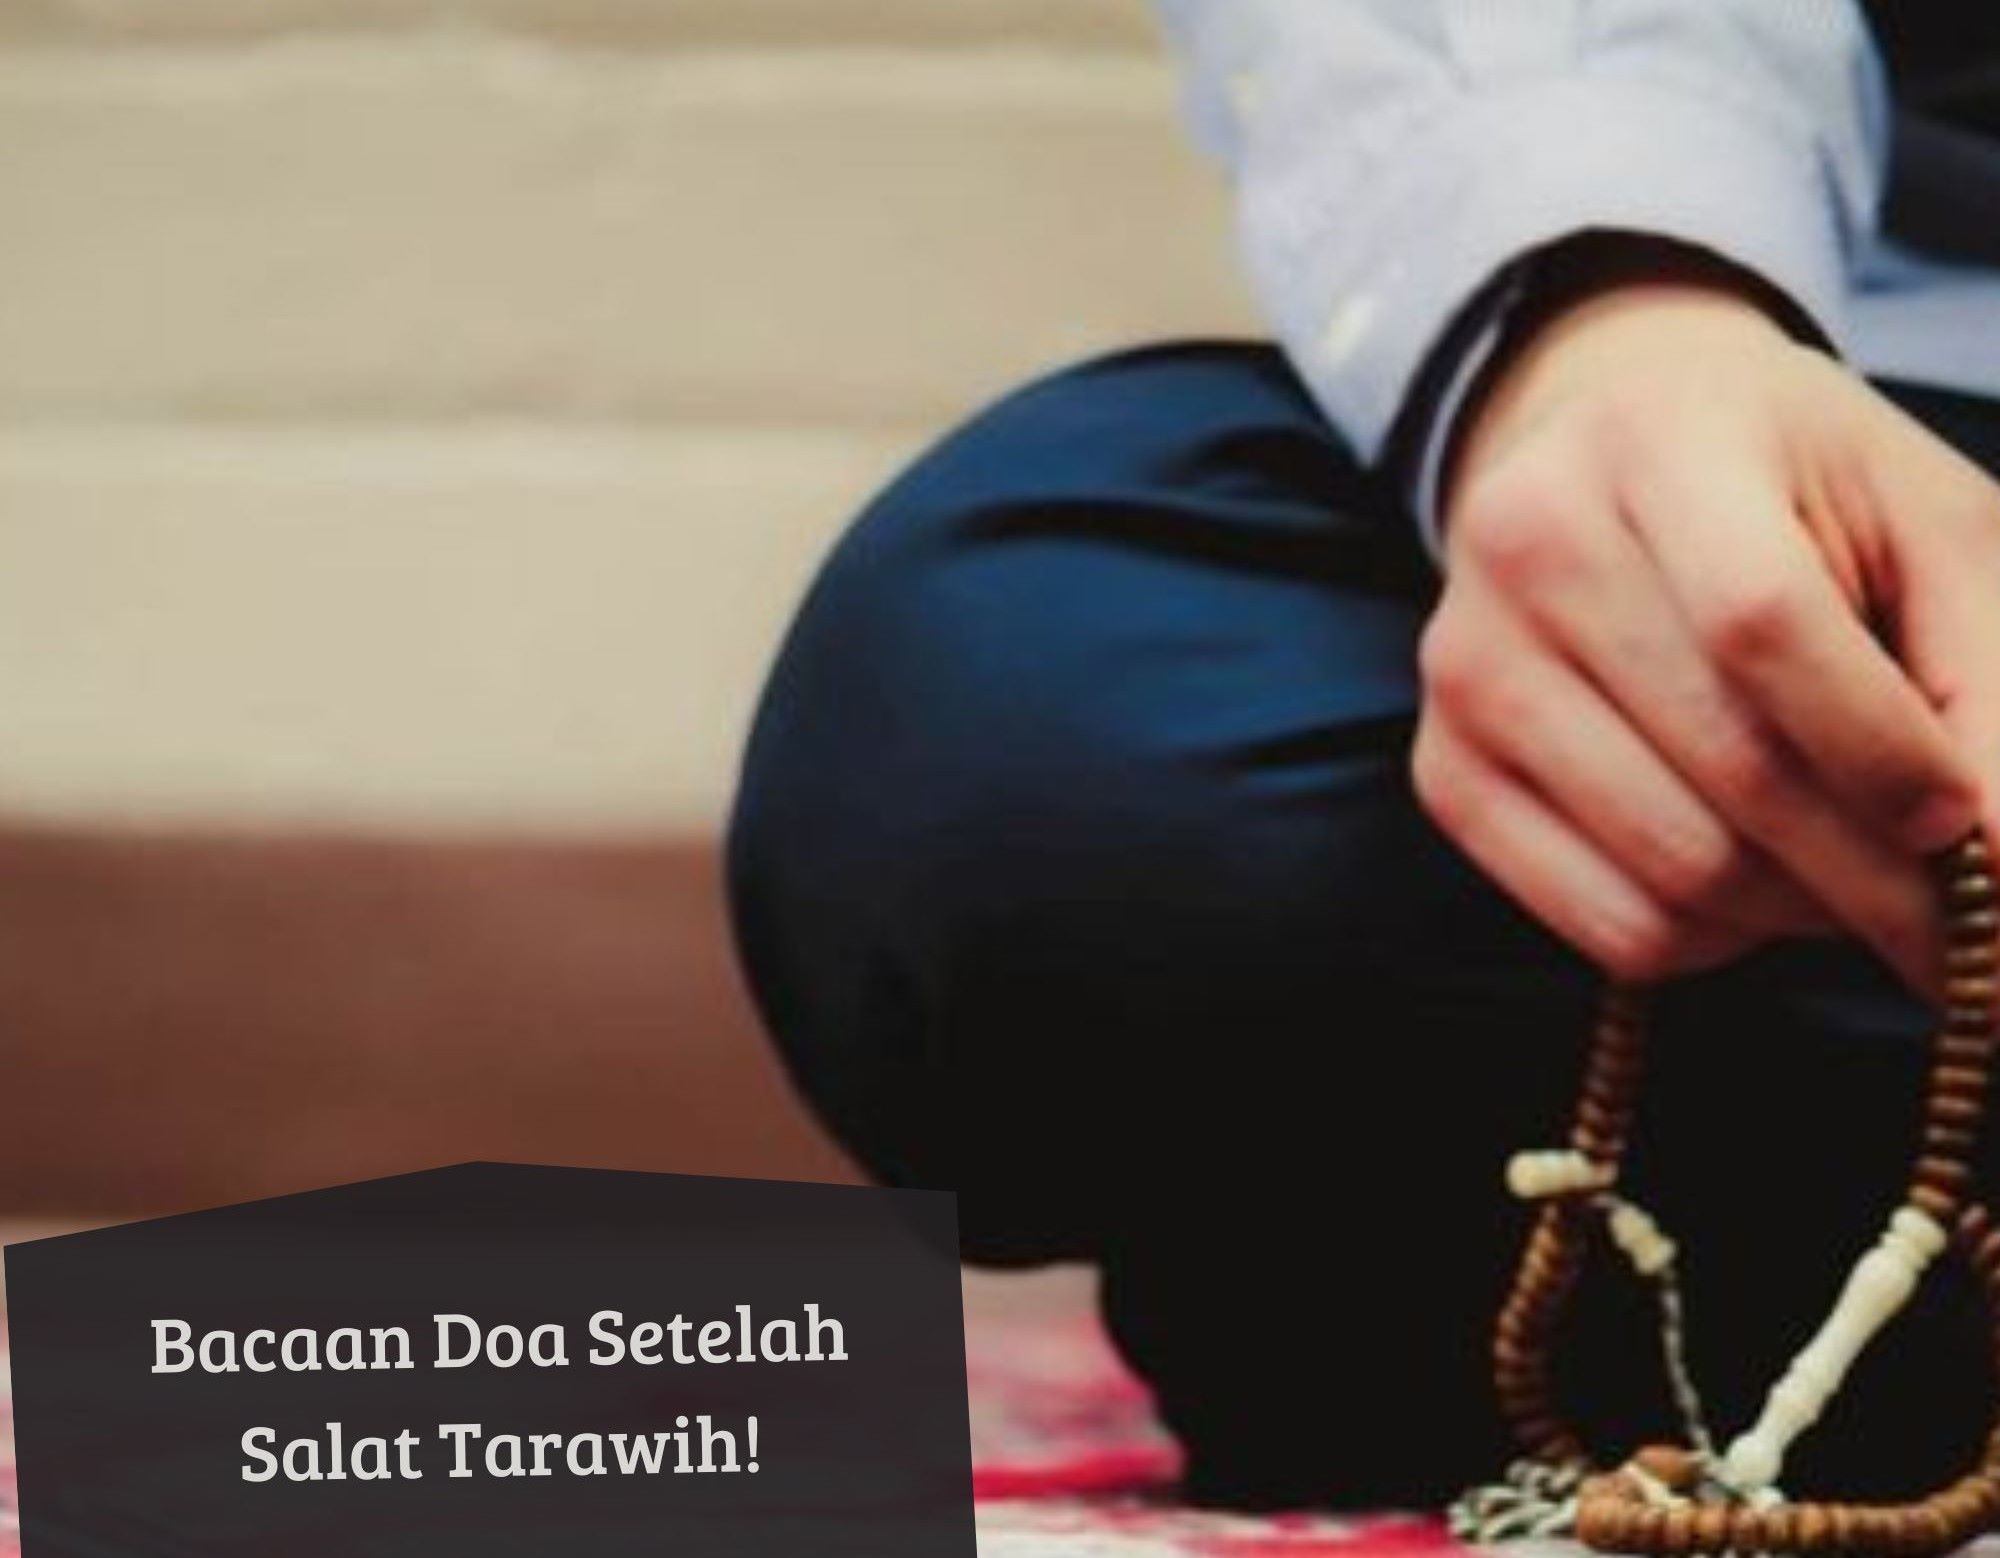 Ini Bacaan Doa Setelah Salat Tarawih! Insya Allah Dilimpahkan Keberkahan Selama Ramadan